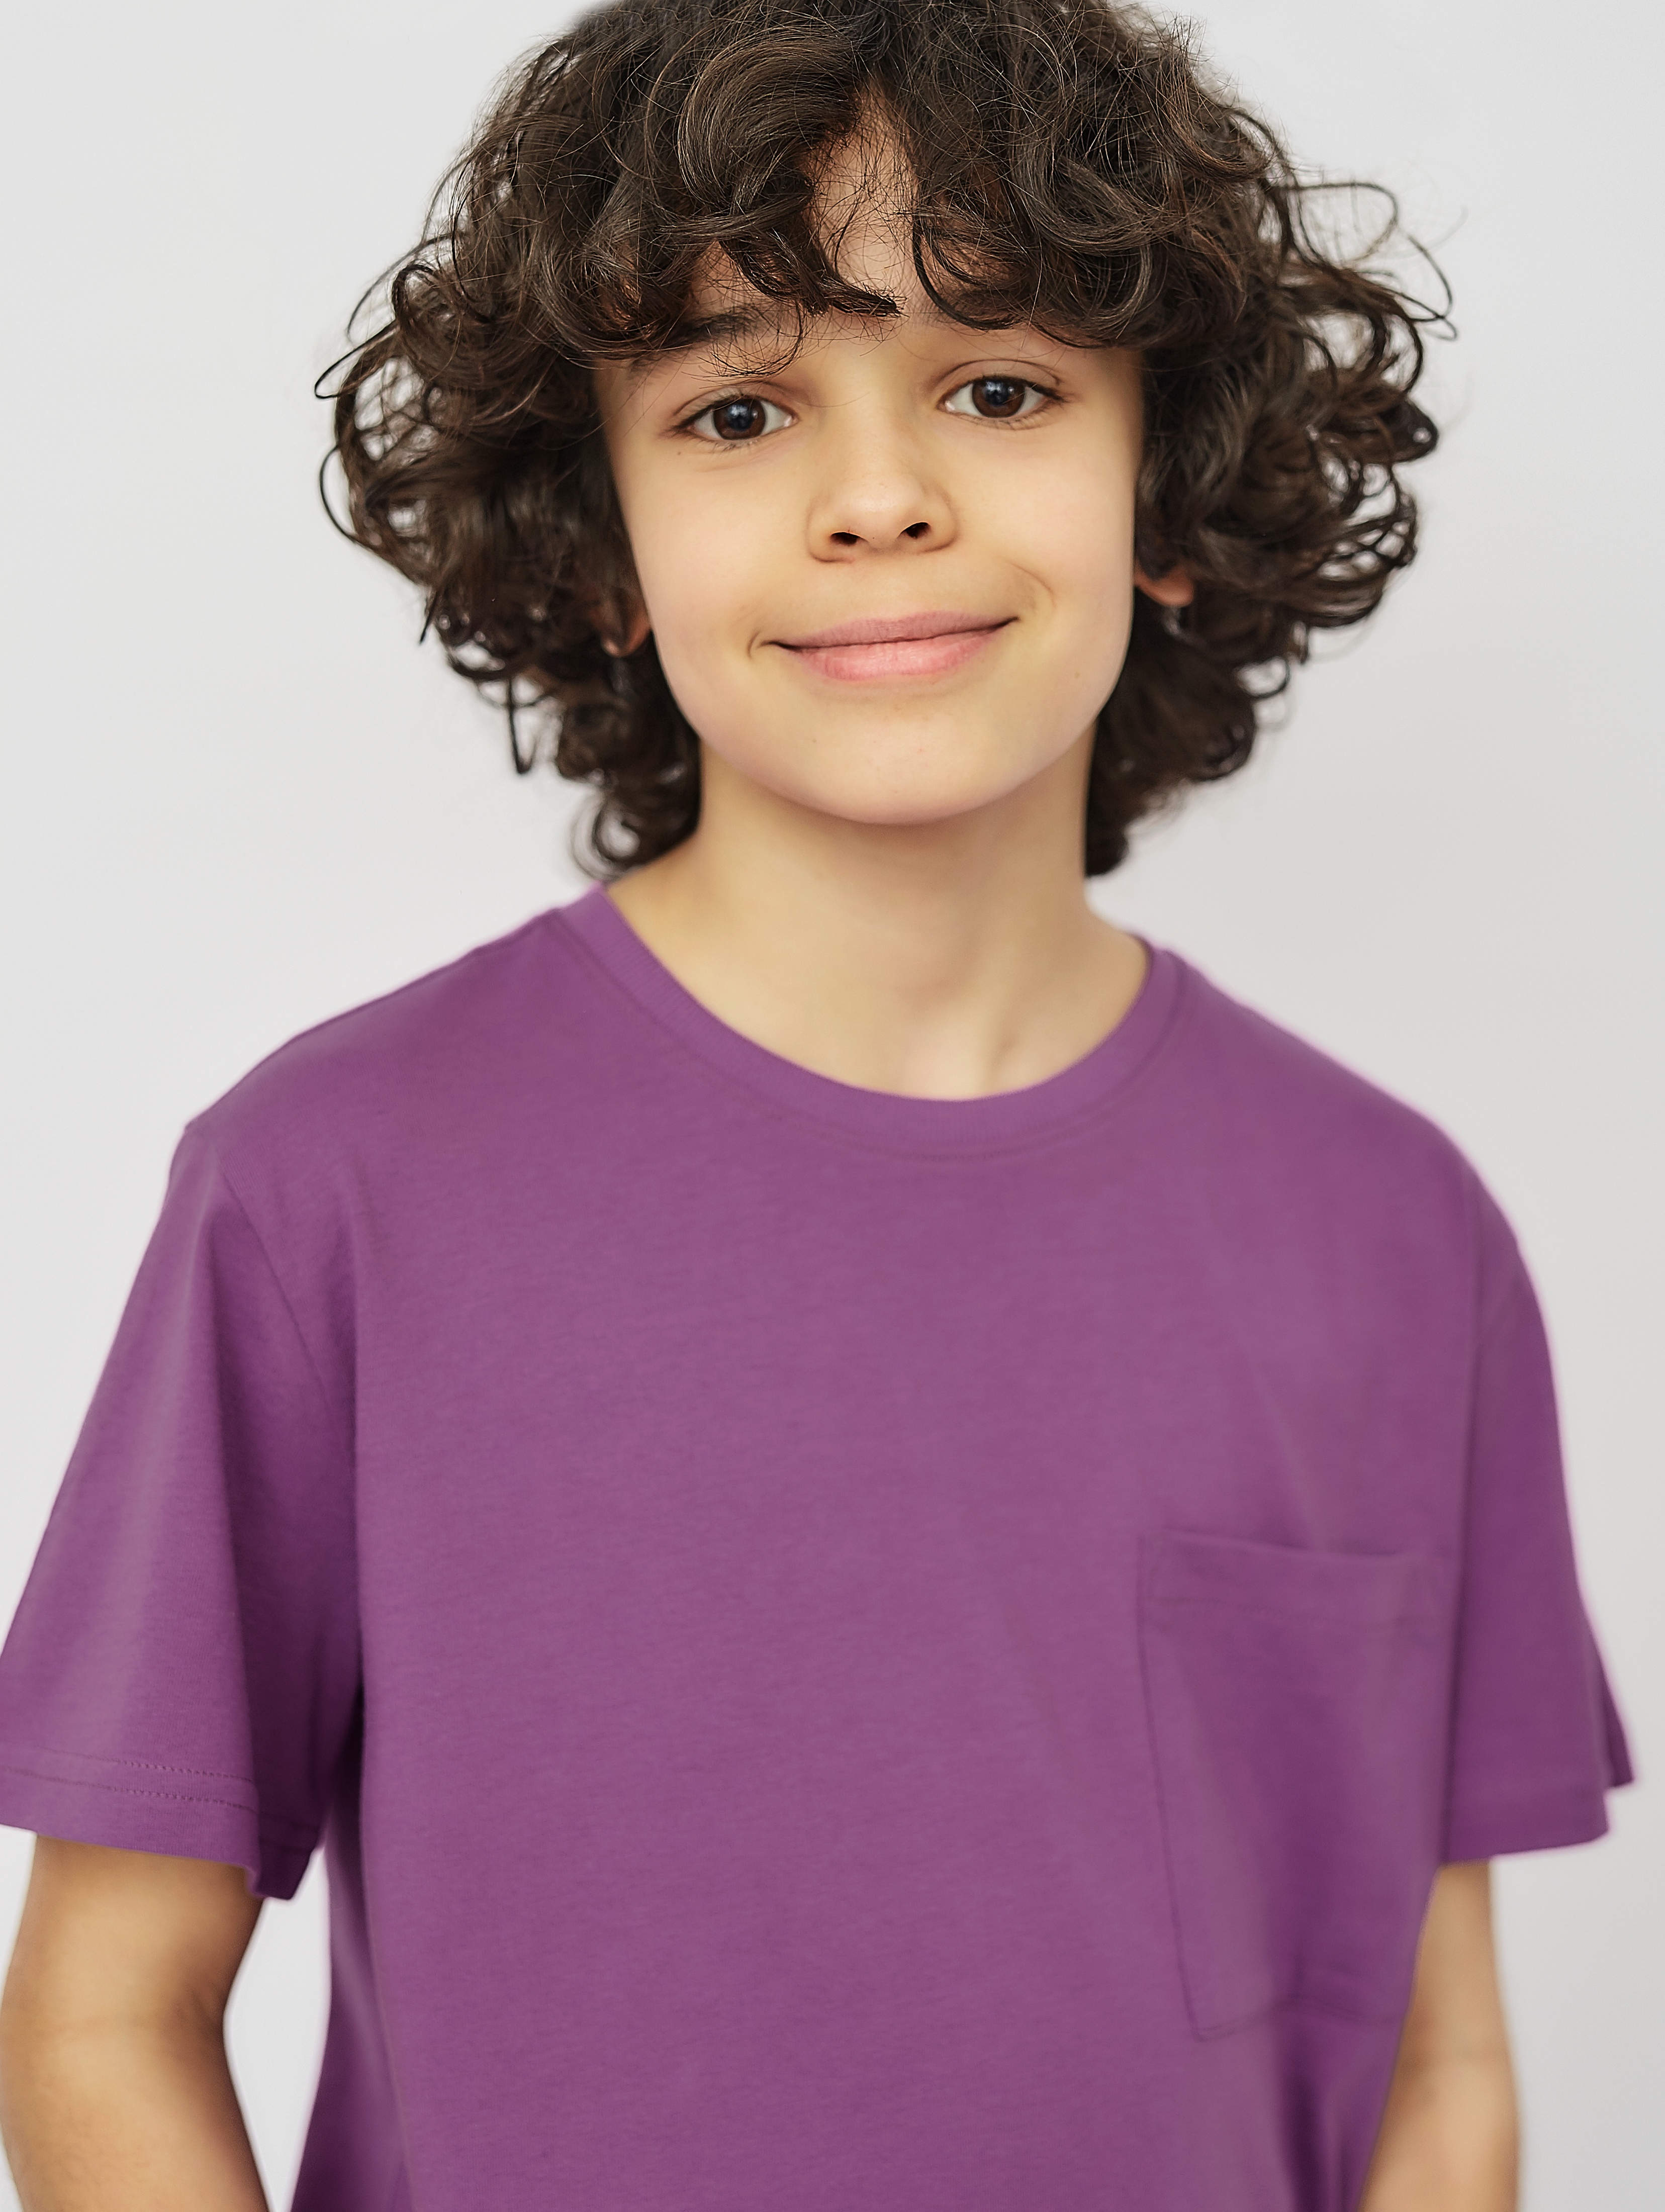 Fioletowy t-shirt dla chłopca z kieszonką- Lincoln&Sharks